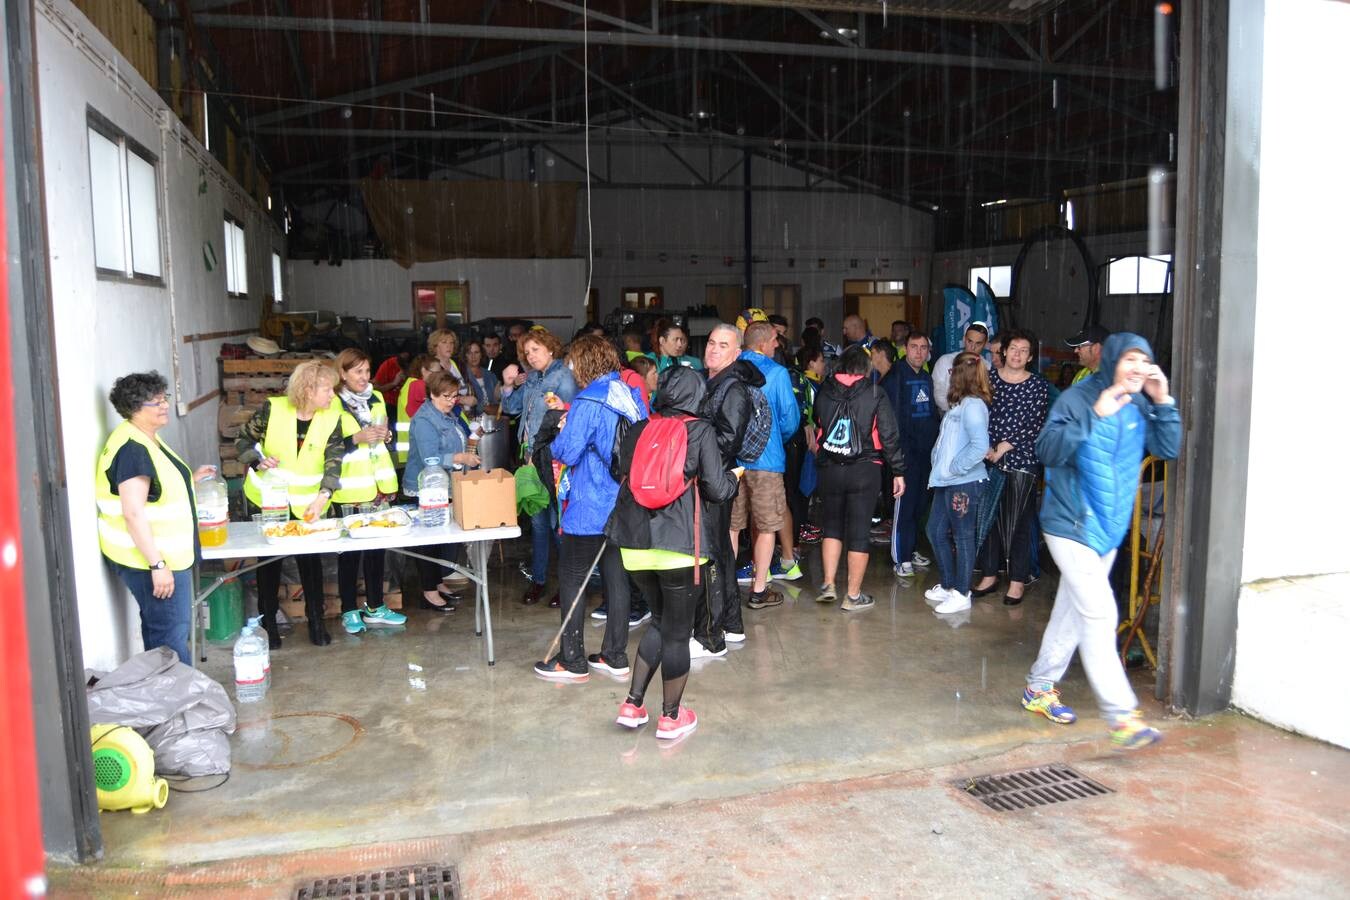 En torno a 120 personas, entre corredores de la trail, minitrail y ruta senderista participaron en la mañana del domingo en esta prueba que estuvo marcada por la intensa lluvia